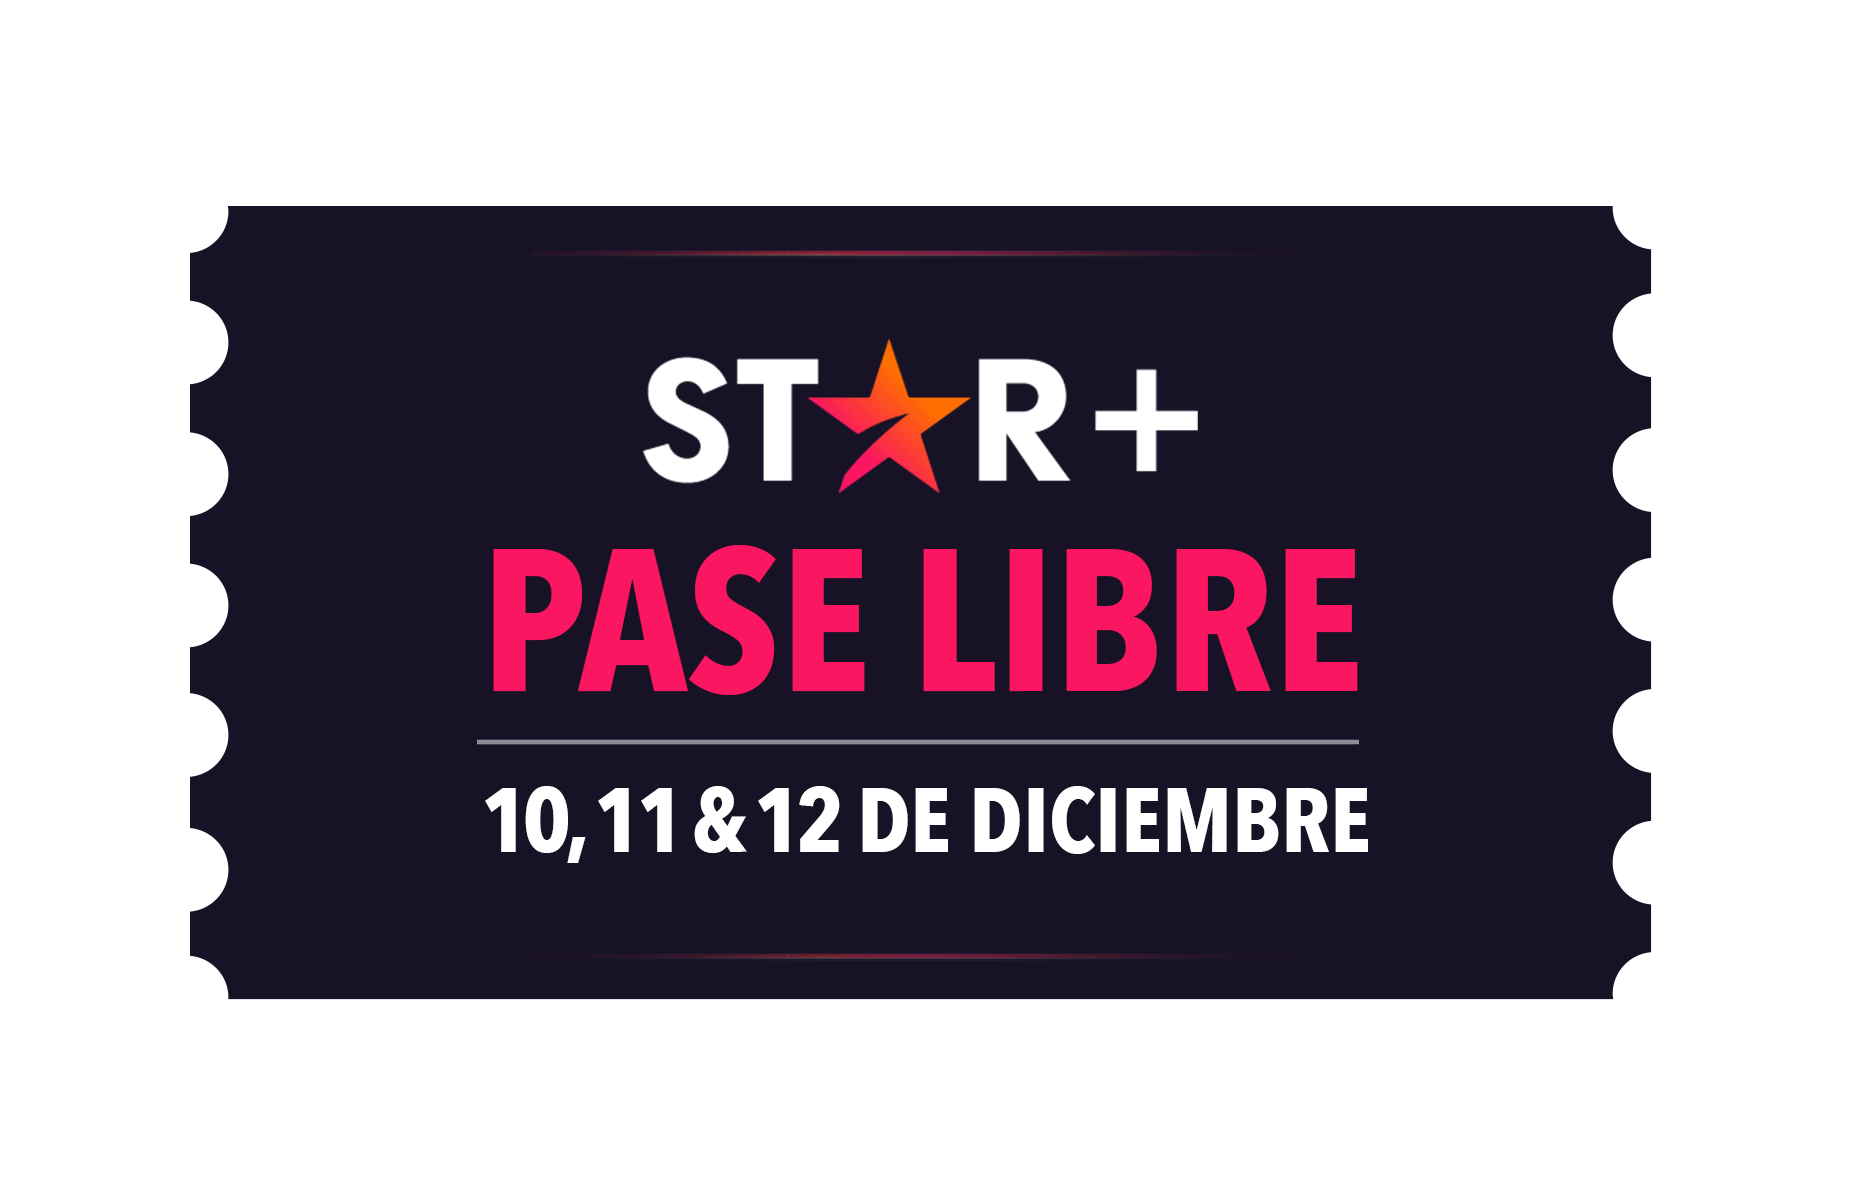 Entre el viernes 10 de diciembre a las 12AM y el domingo 12 de diciembre a las 11:59PM (hora local), todas las nuevas suscripciones a Star+